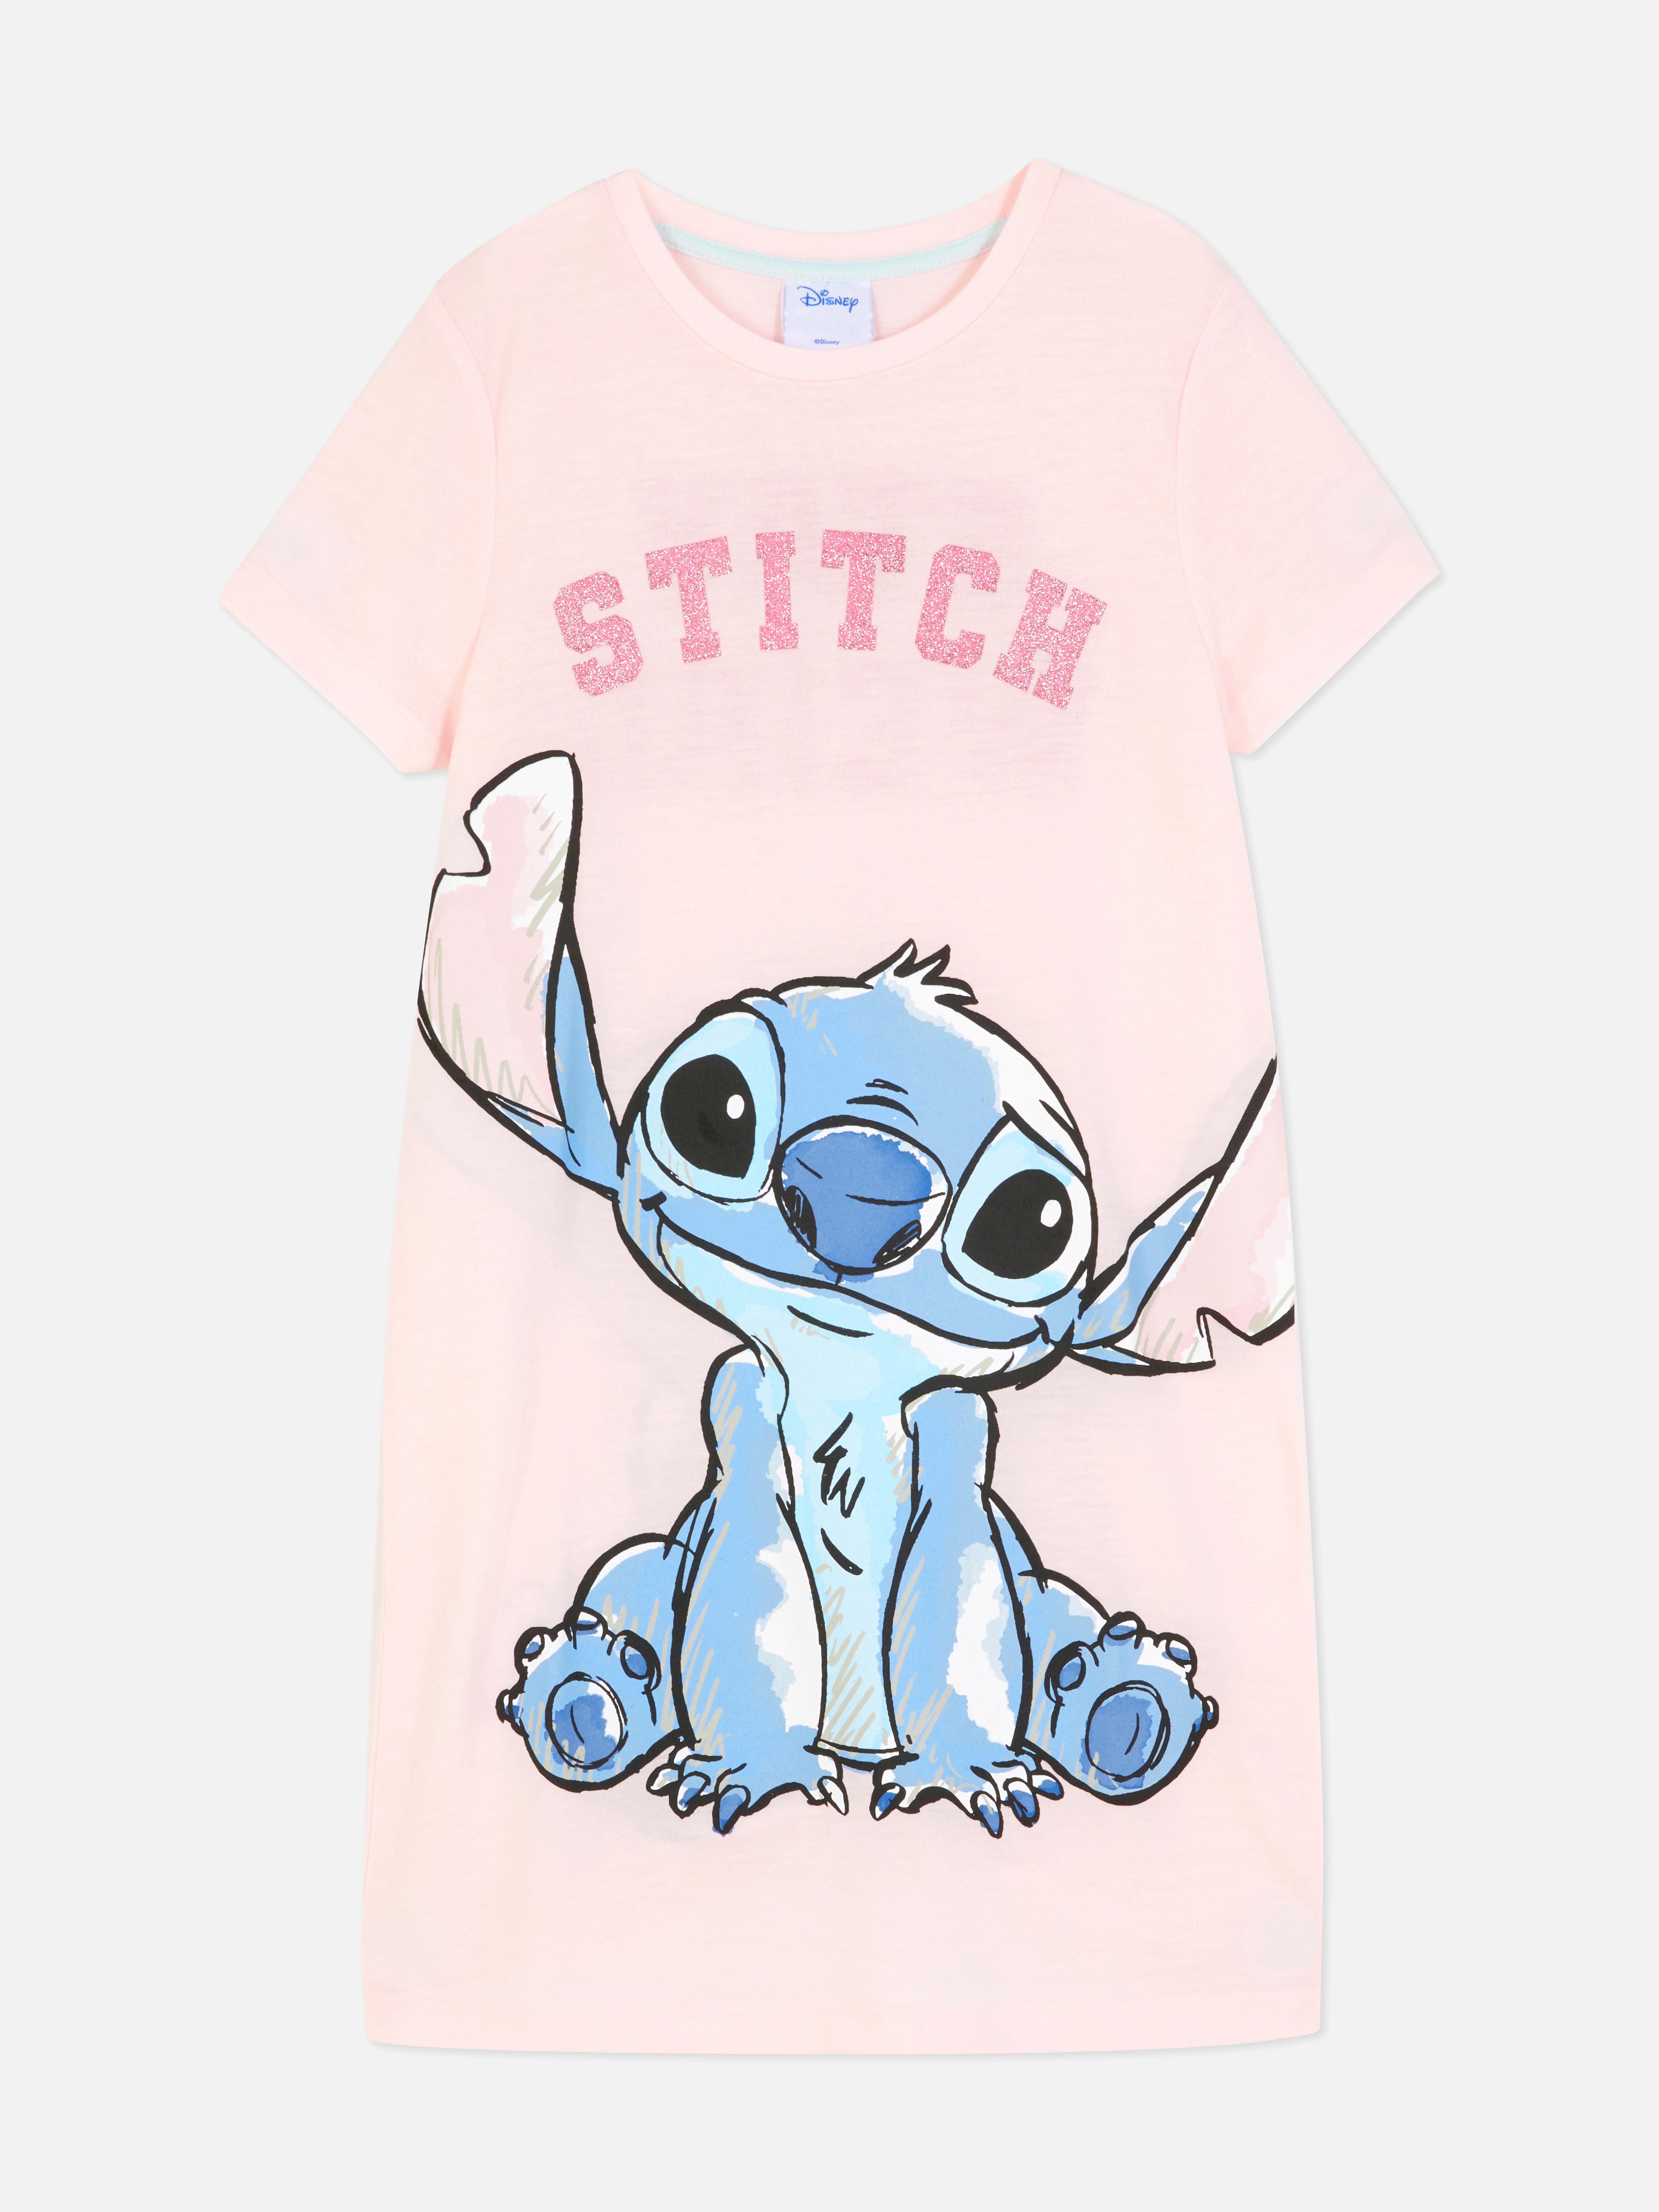 Lilo Stitch Merch -  UK